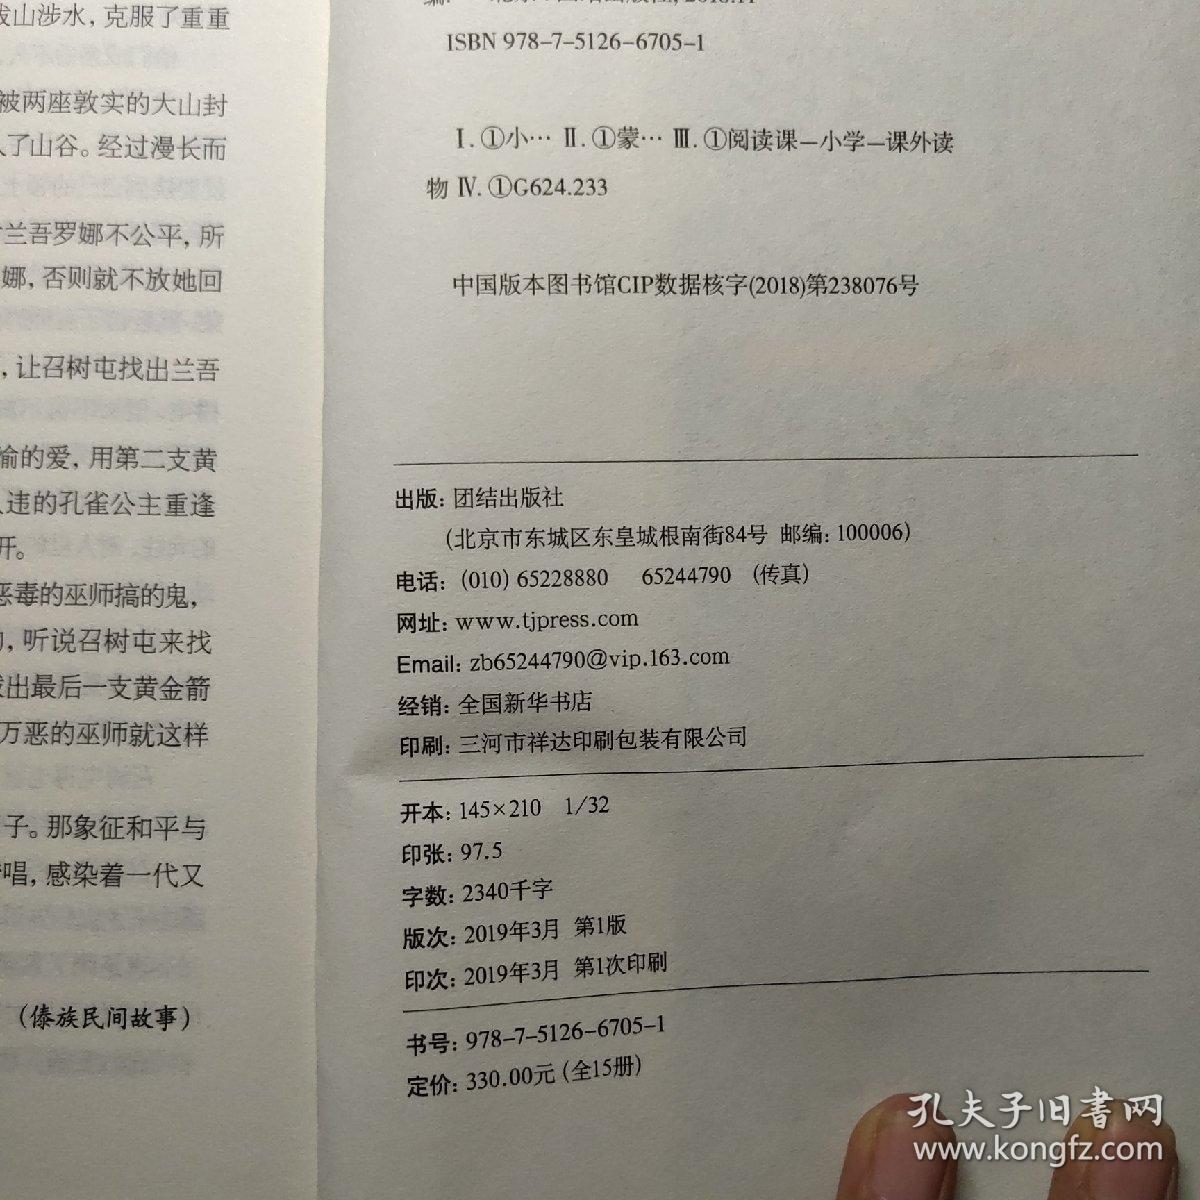 中国民间故事 统编小学语文教材（三年级下）“快乐读书吧”推荐书目